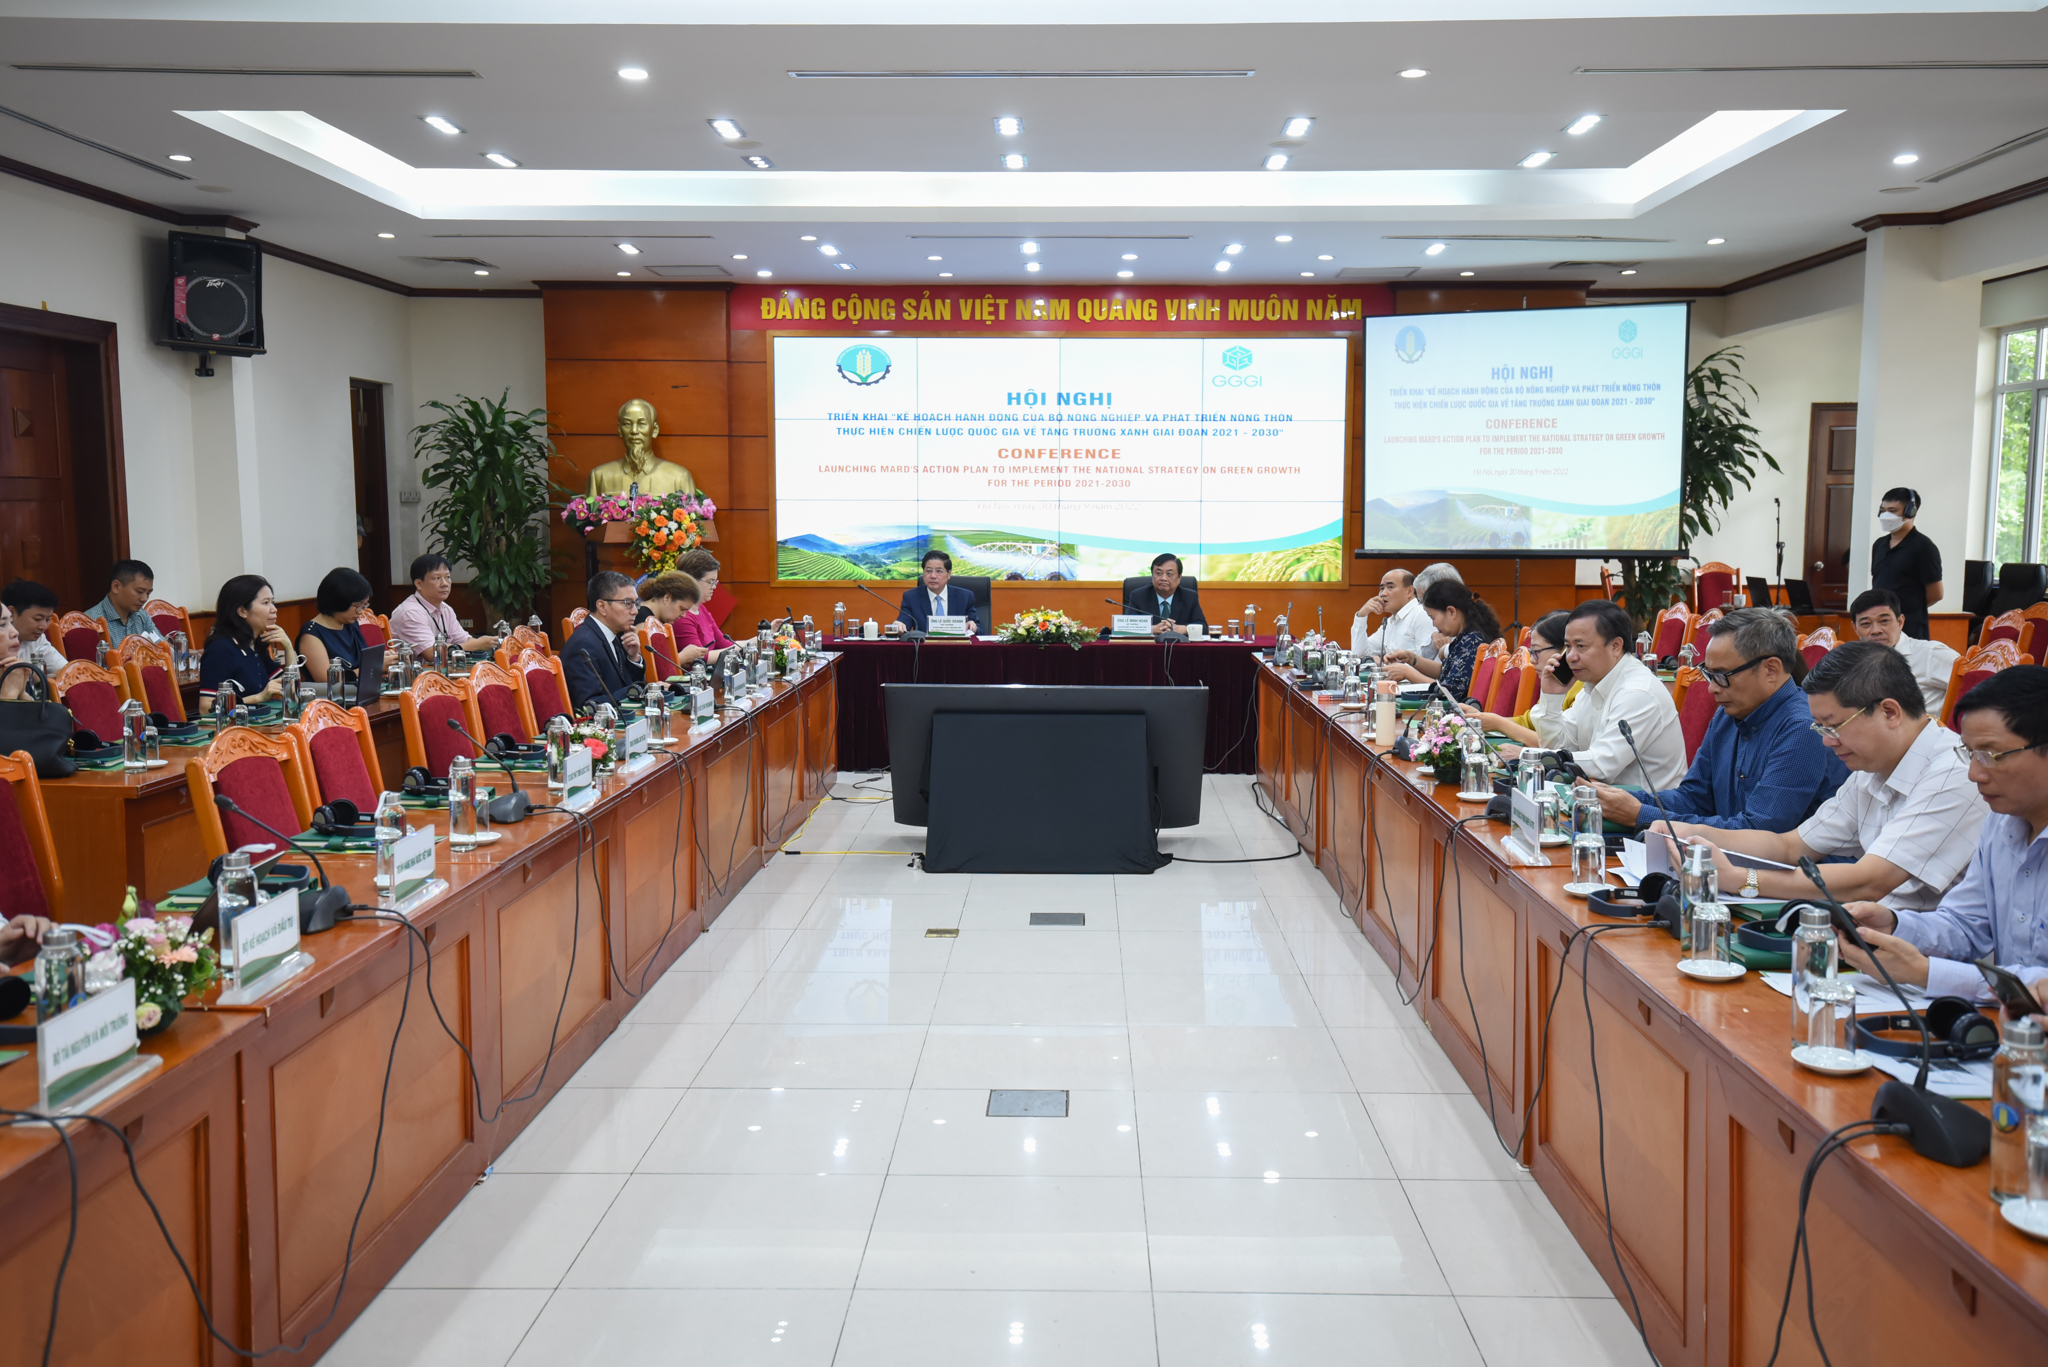 Hội nghị triển khai Kế hoạch hành động của Bộ NN-PTNT thực hiện Chiến lược Quốc gia về tăng trưởng xanh giai đoạn 2021 – 2030 sáng 30/9. Ảnh: Tùng Đinh.